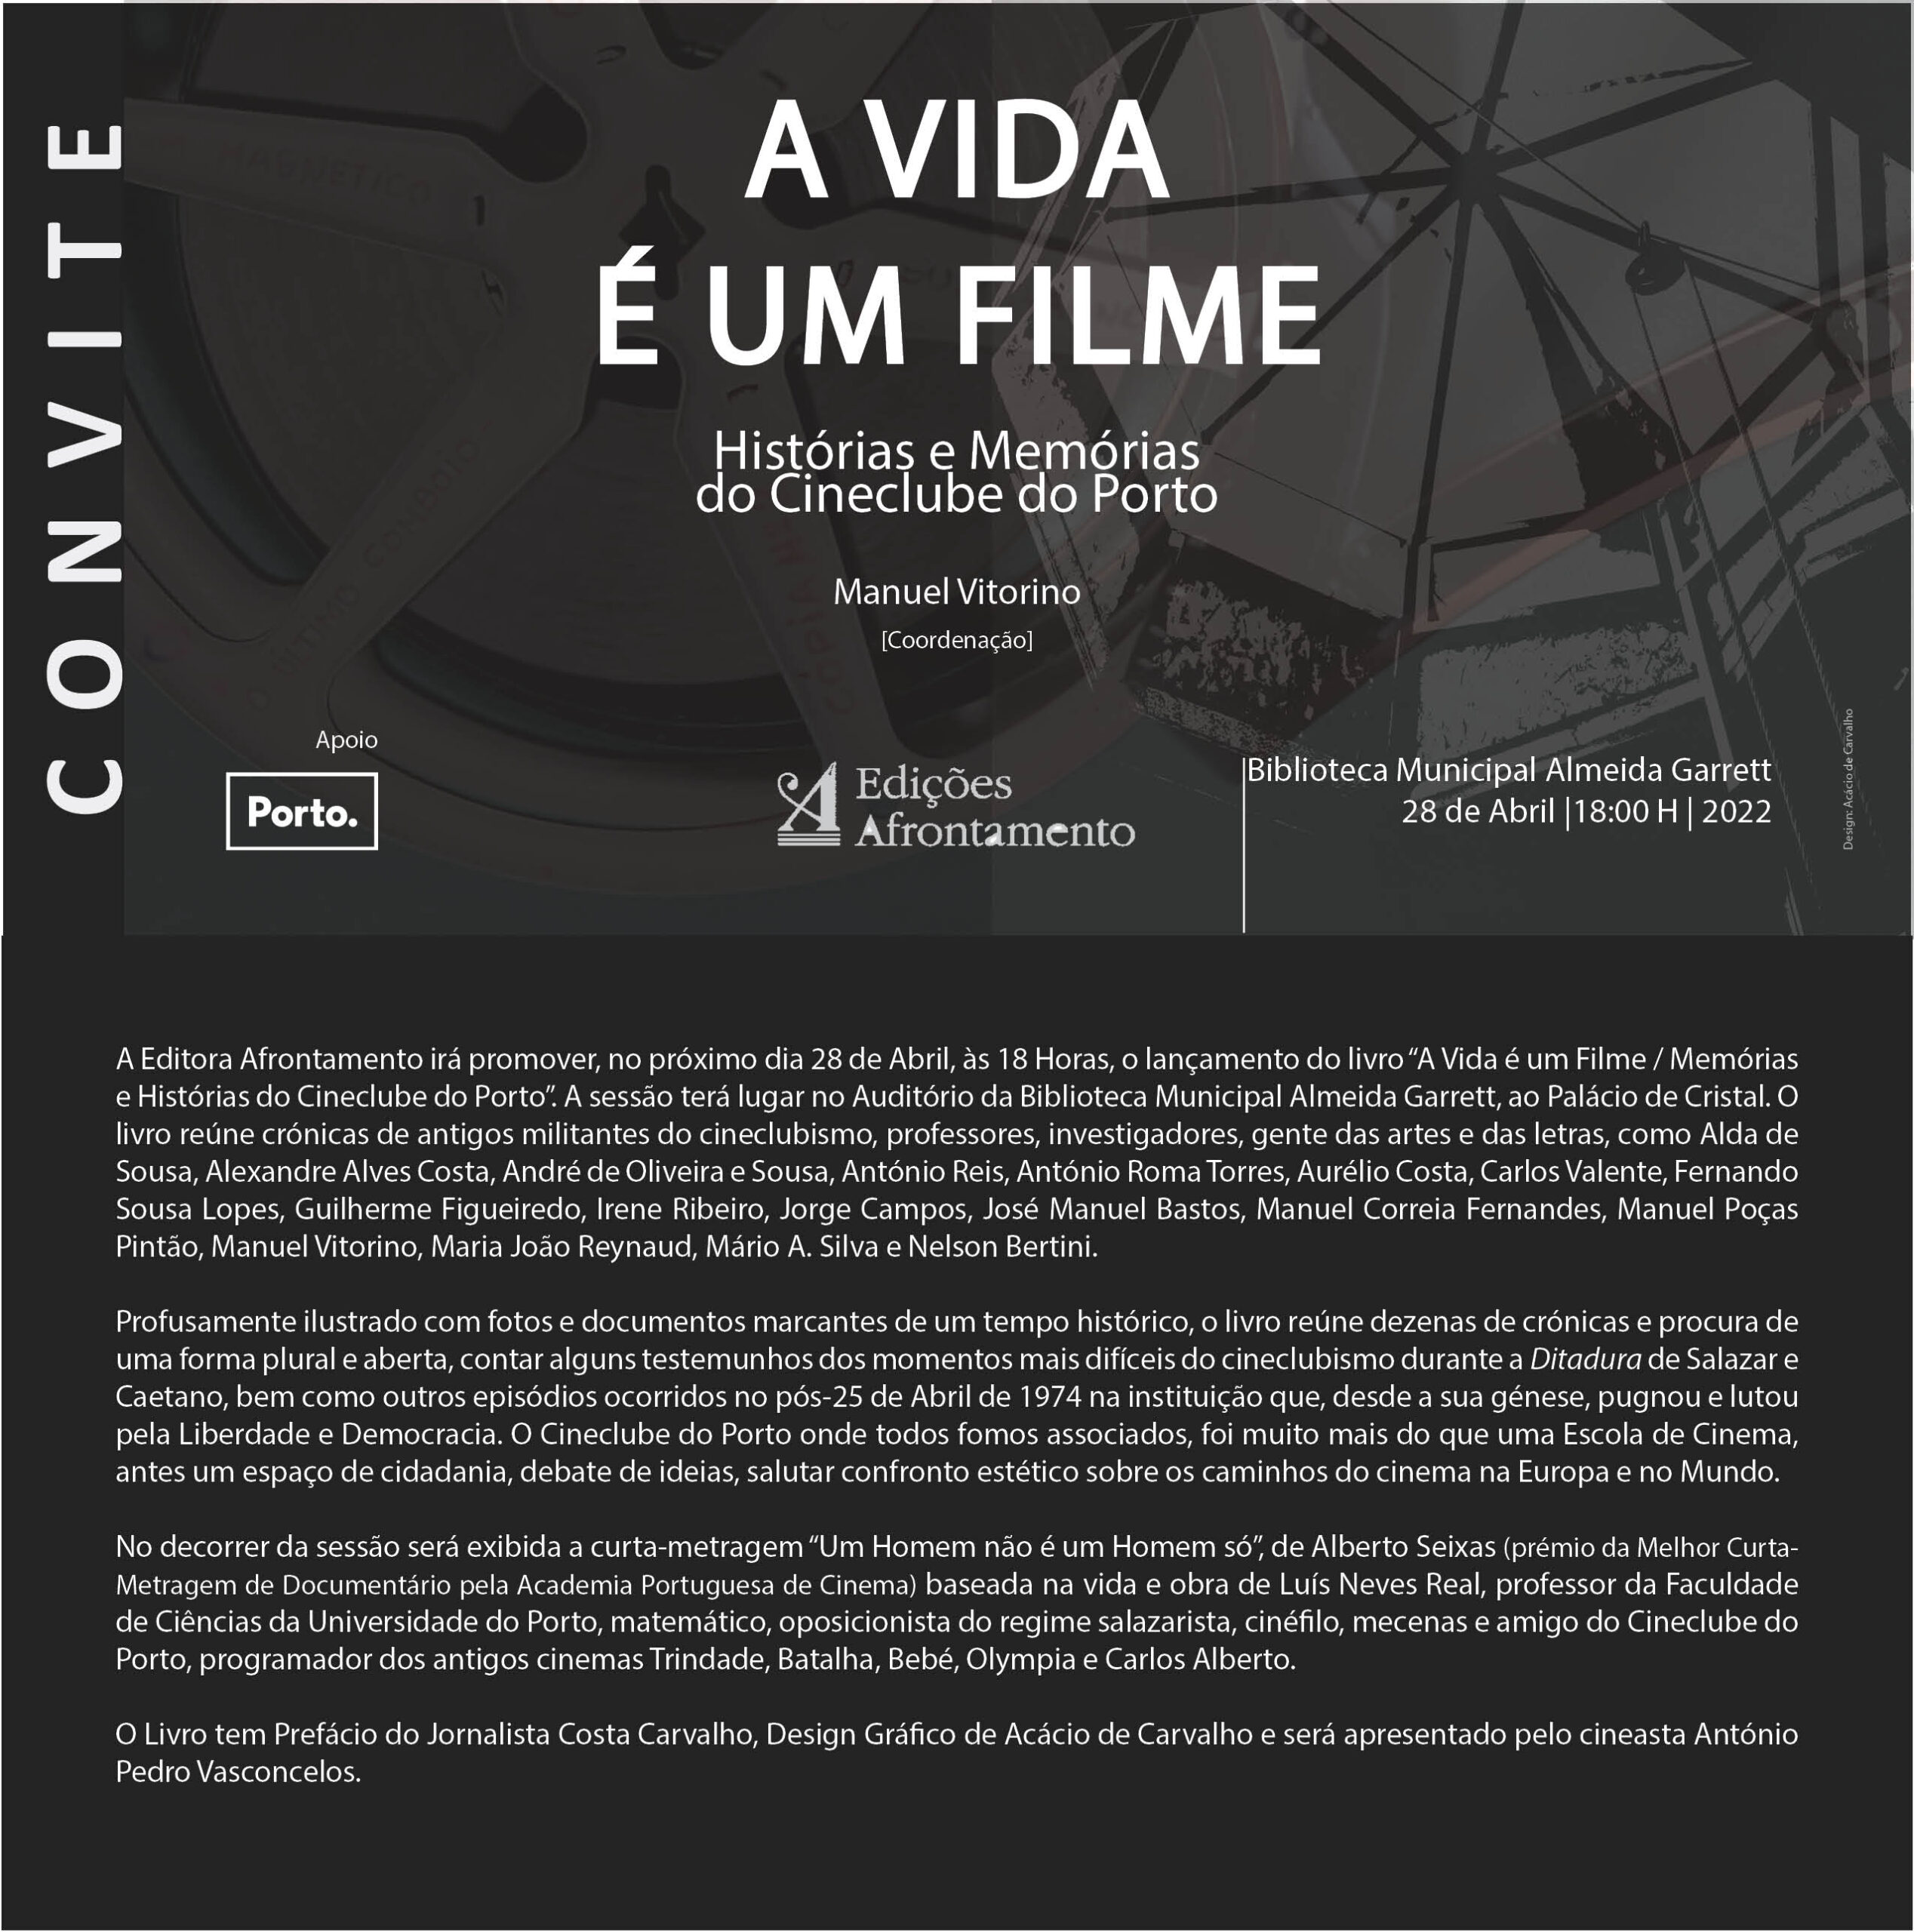 A Vida é um Filme - Histórias e Memórias do Cineclube do Porto